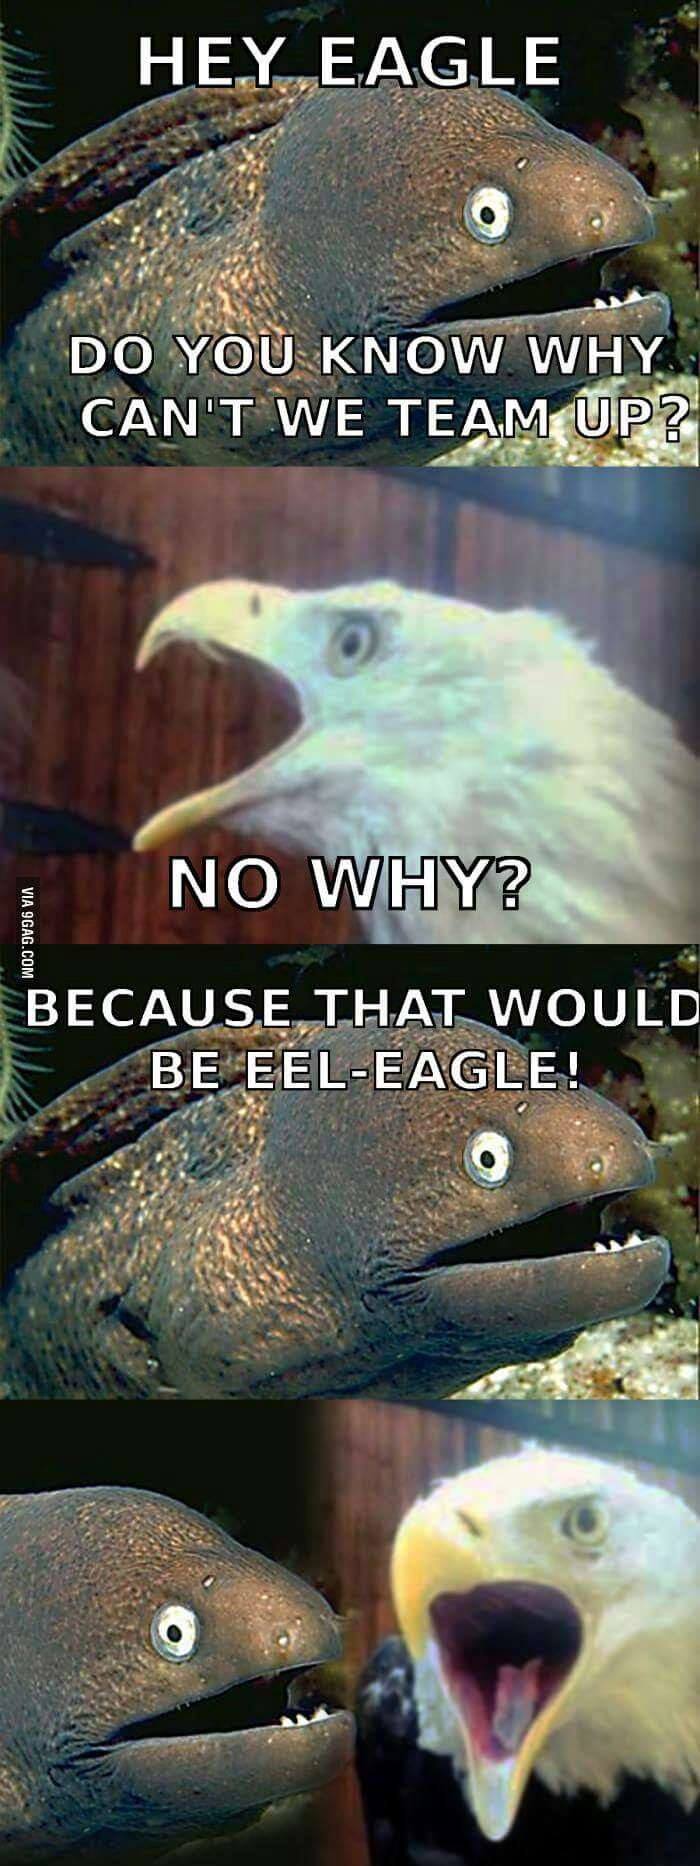 Hey eagle...